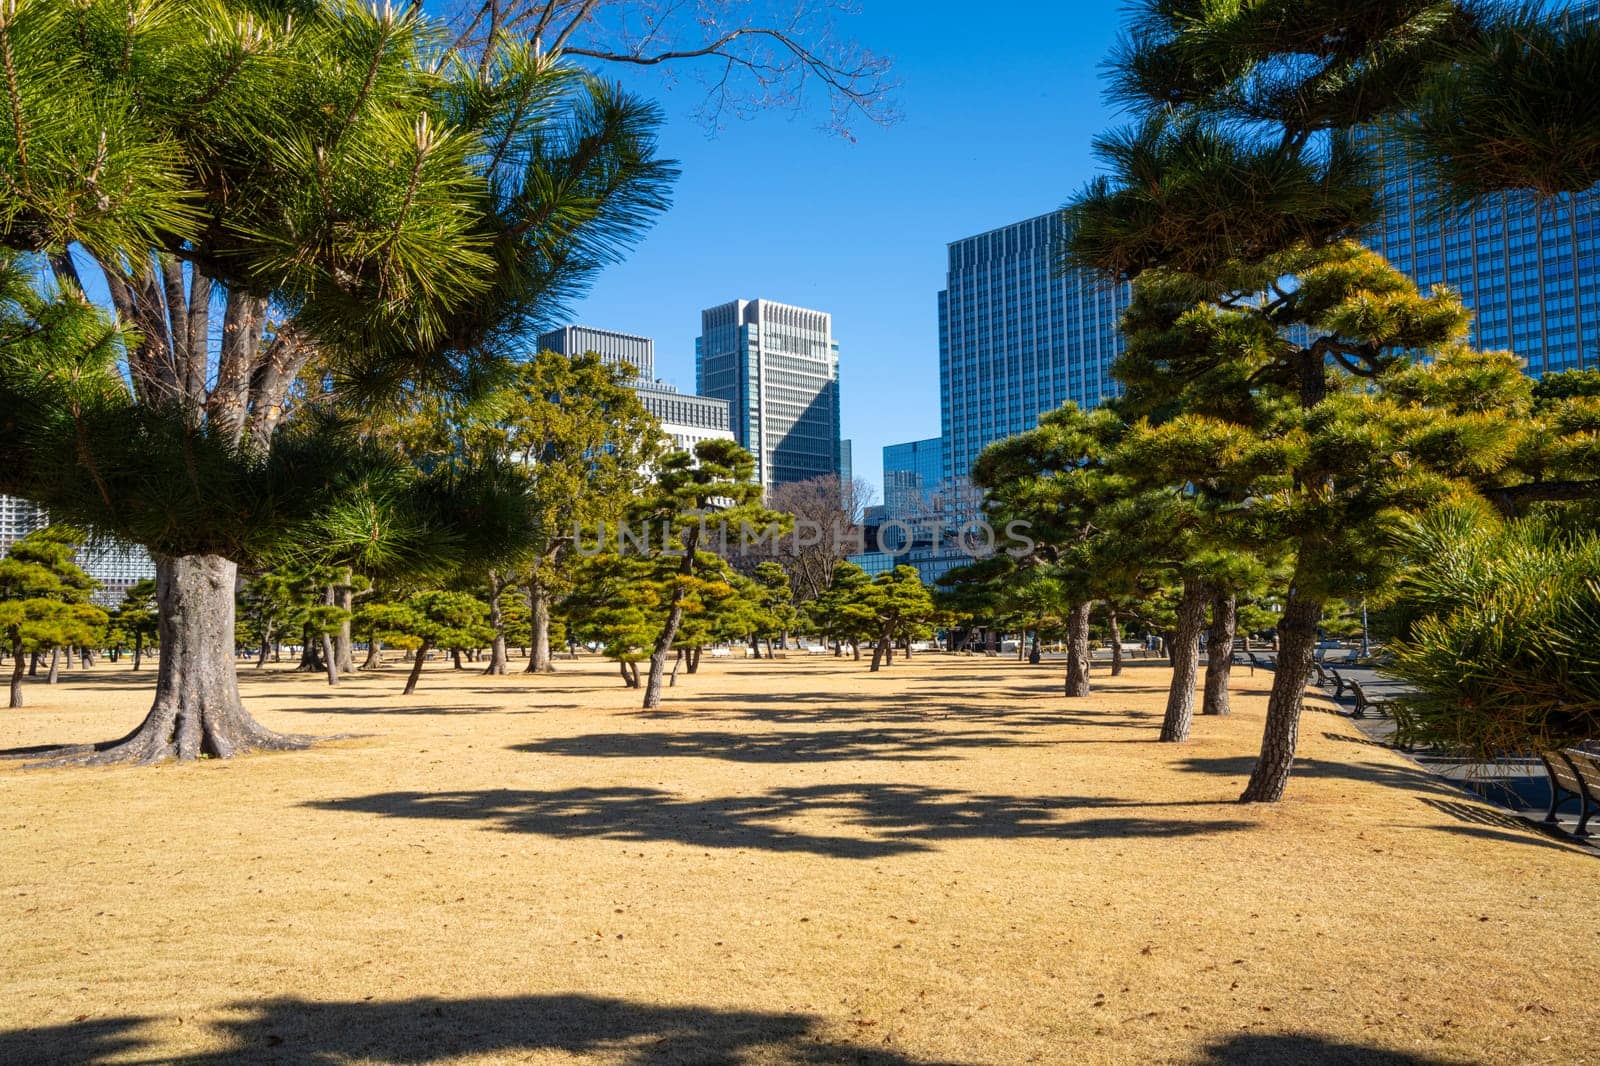 Kokyo Gaien National Garden in Tokyo, Japan by sergiodv